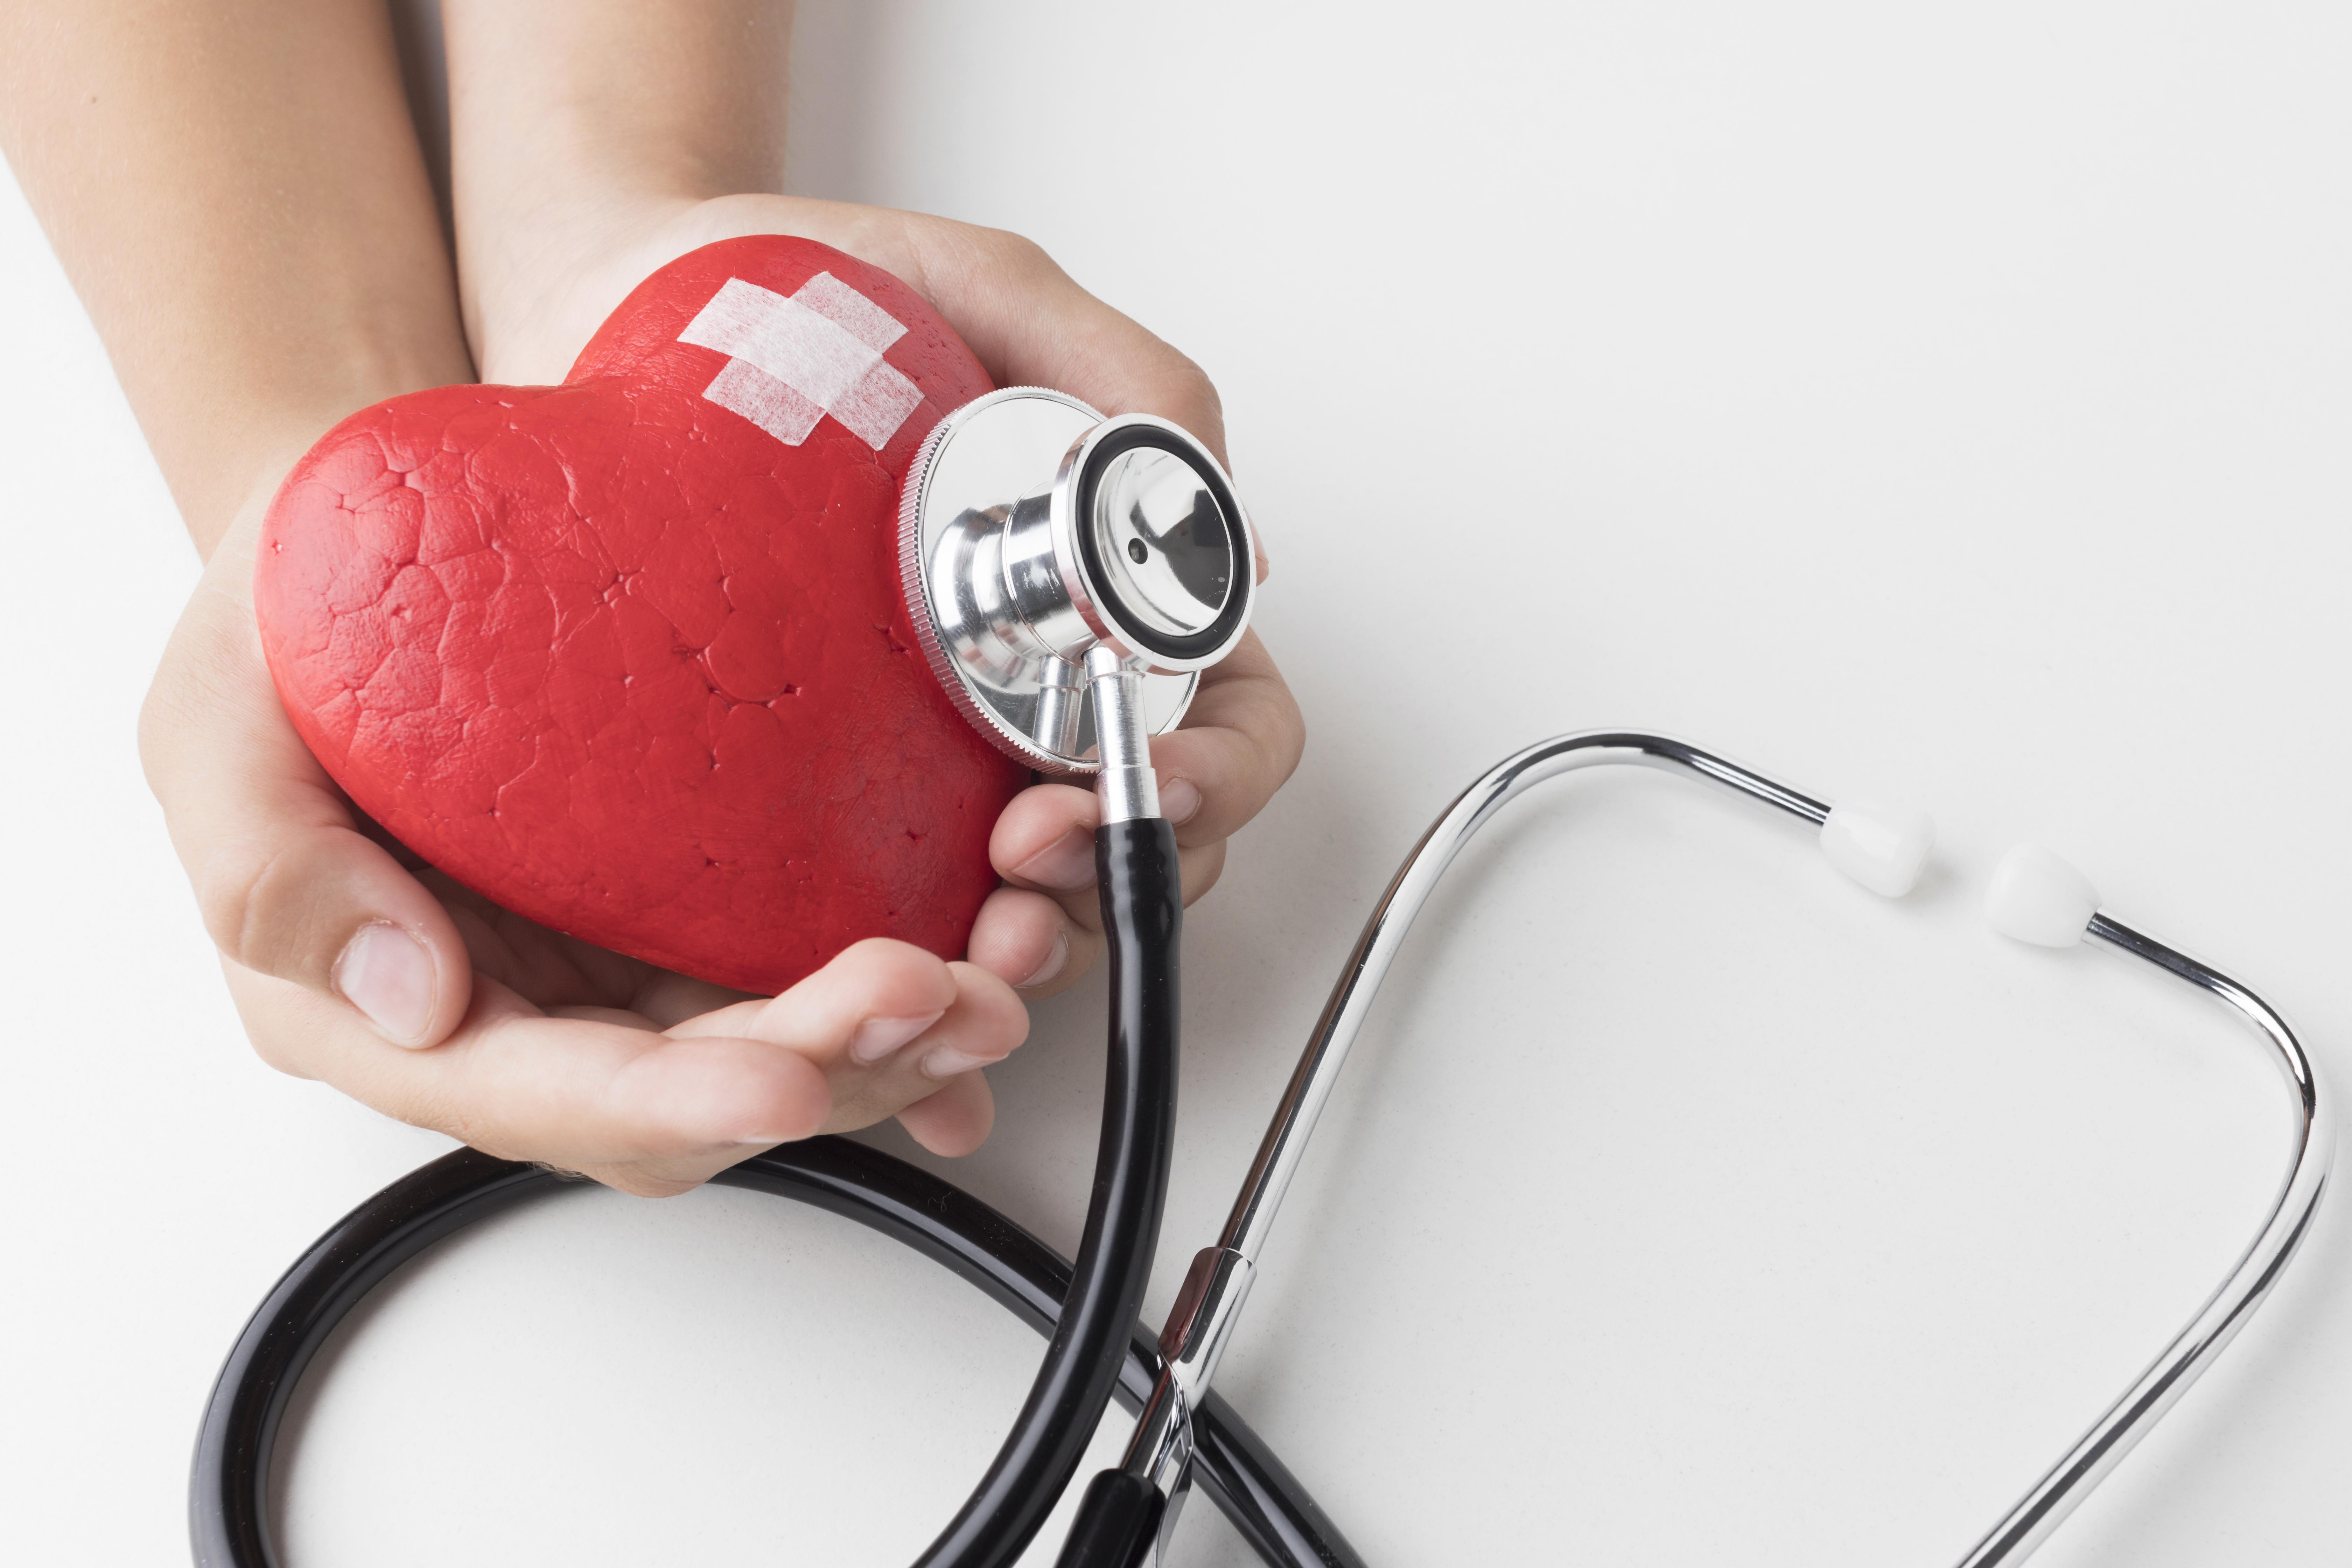 Biết rõ những dấu hiệu nhồi máu cơ tim ở phụ nữ để phòng ngừa và điều trị